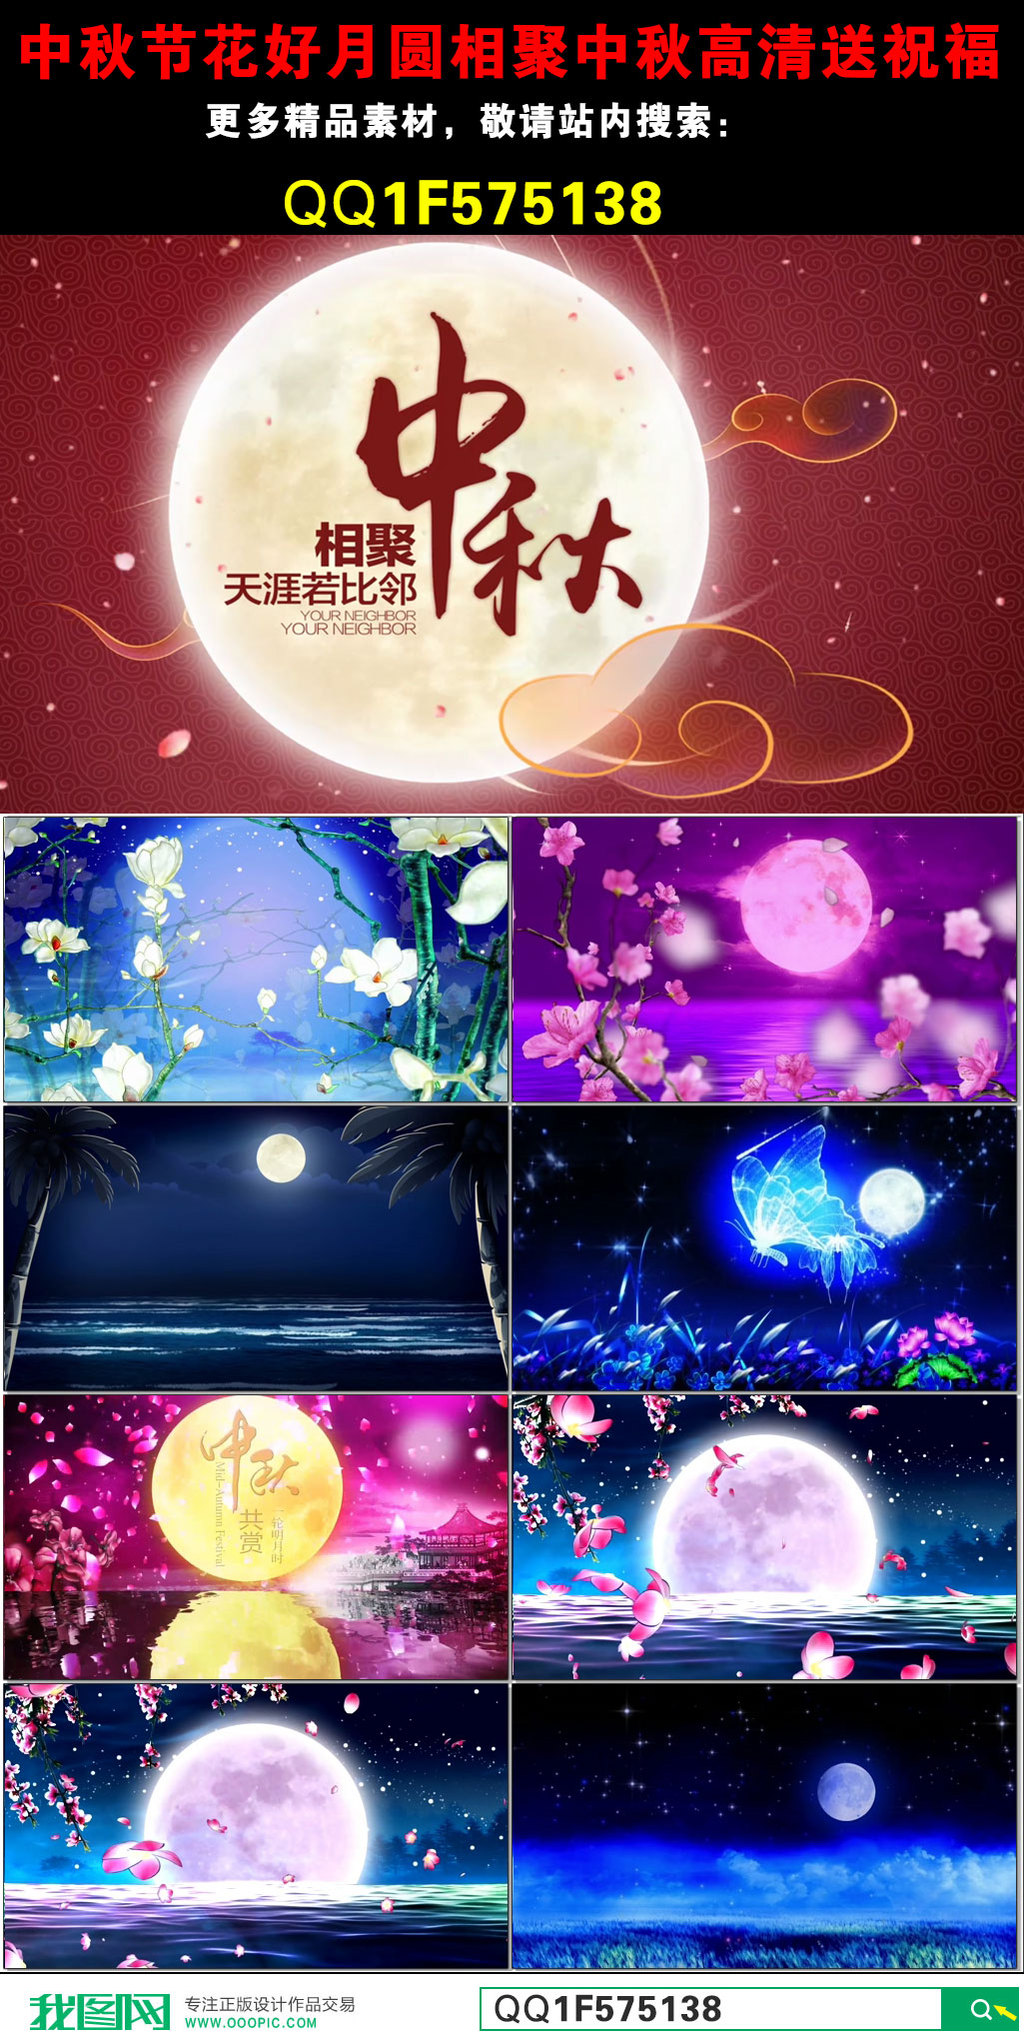 中秋节送祝福歌曲视频高清LED视频素材图片设